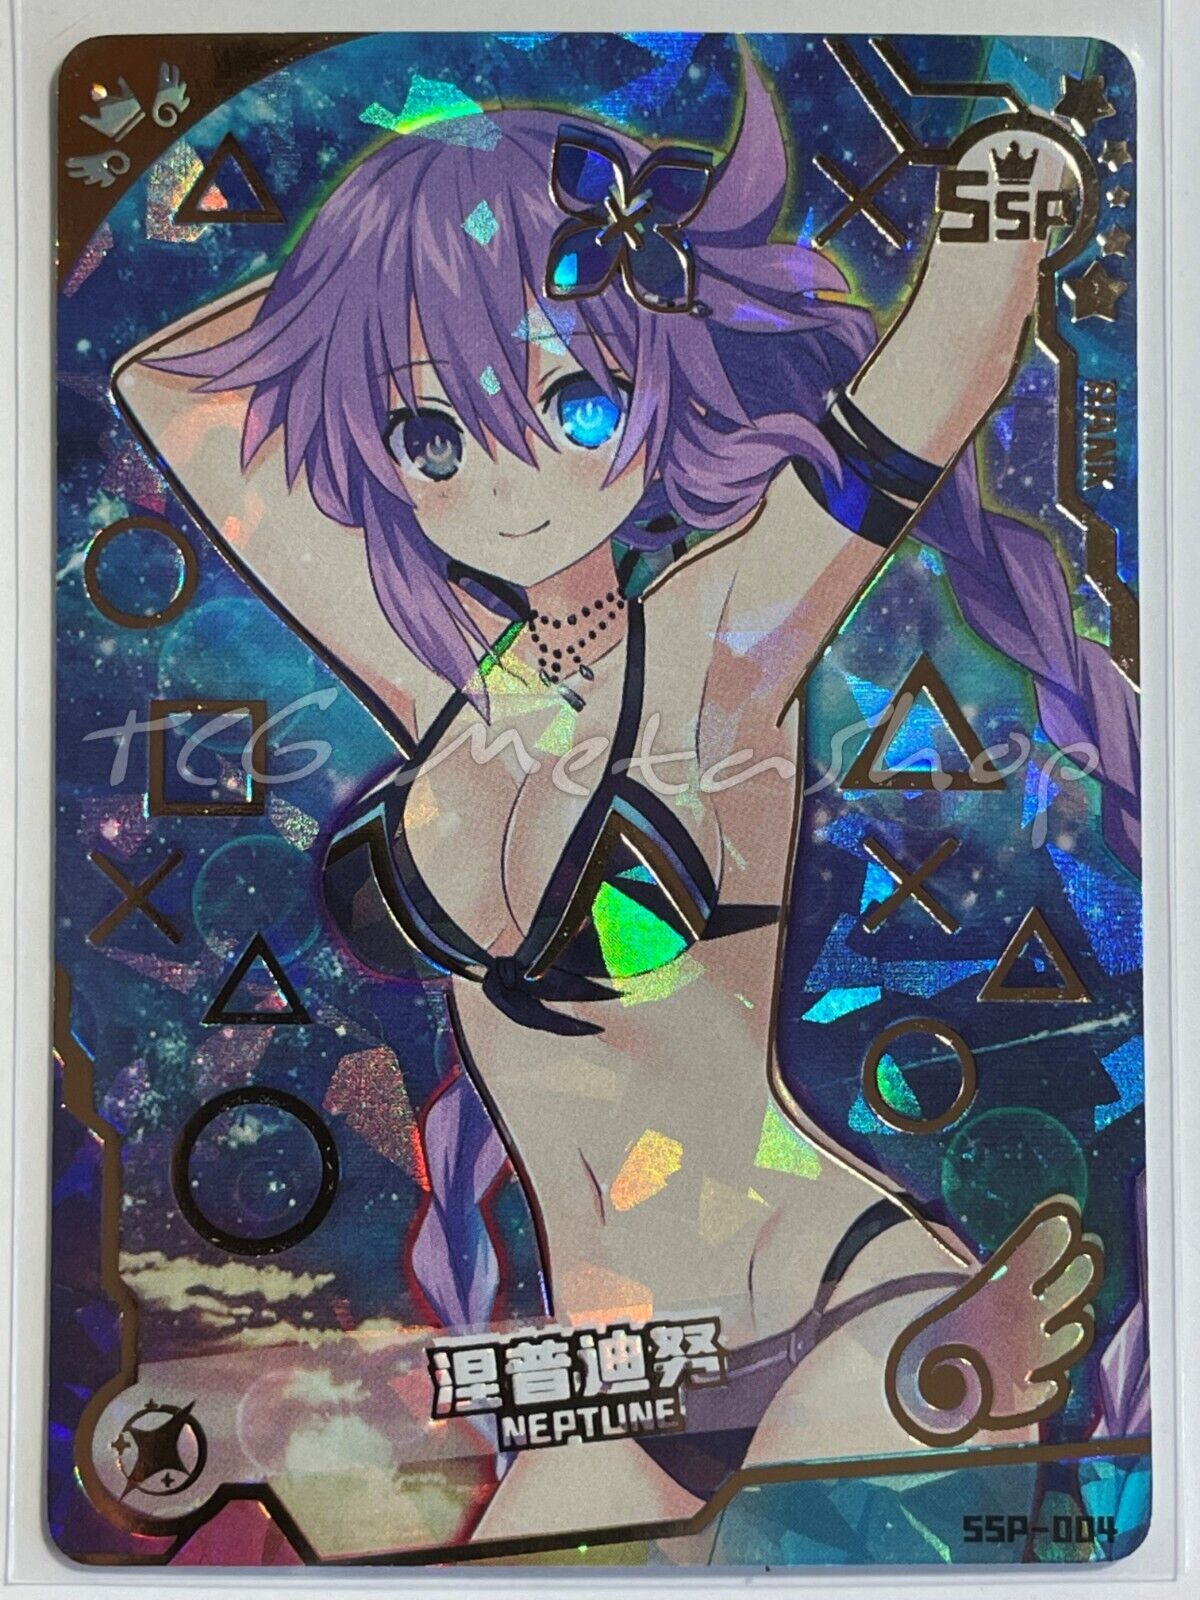 🔥 Maiden / Girl Party - Goddess Story [SSP] Bikini Waifu Anime Doujin Cards 🔥